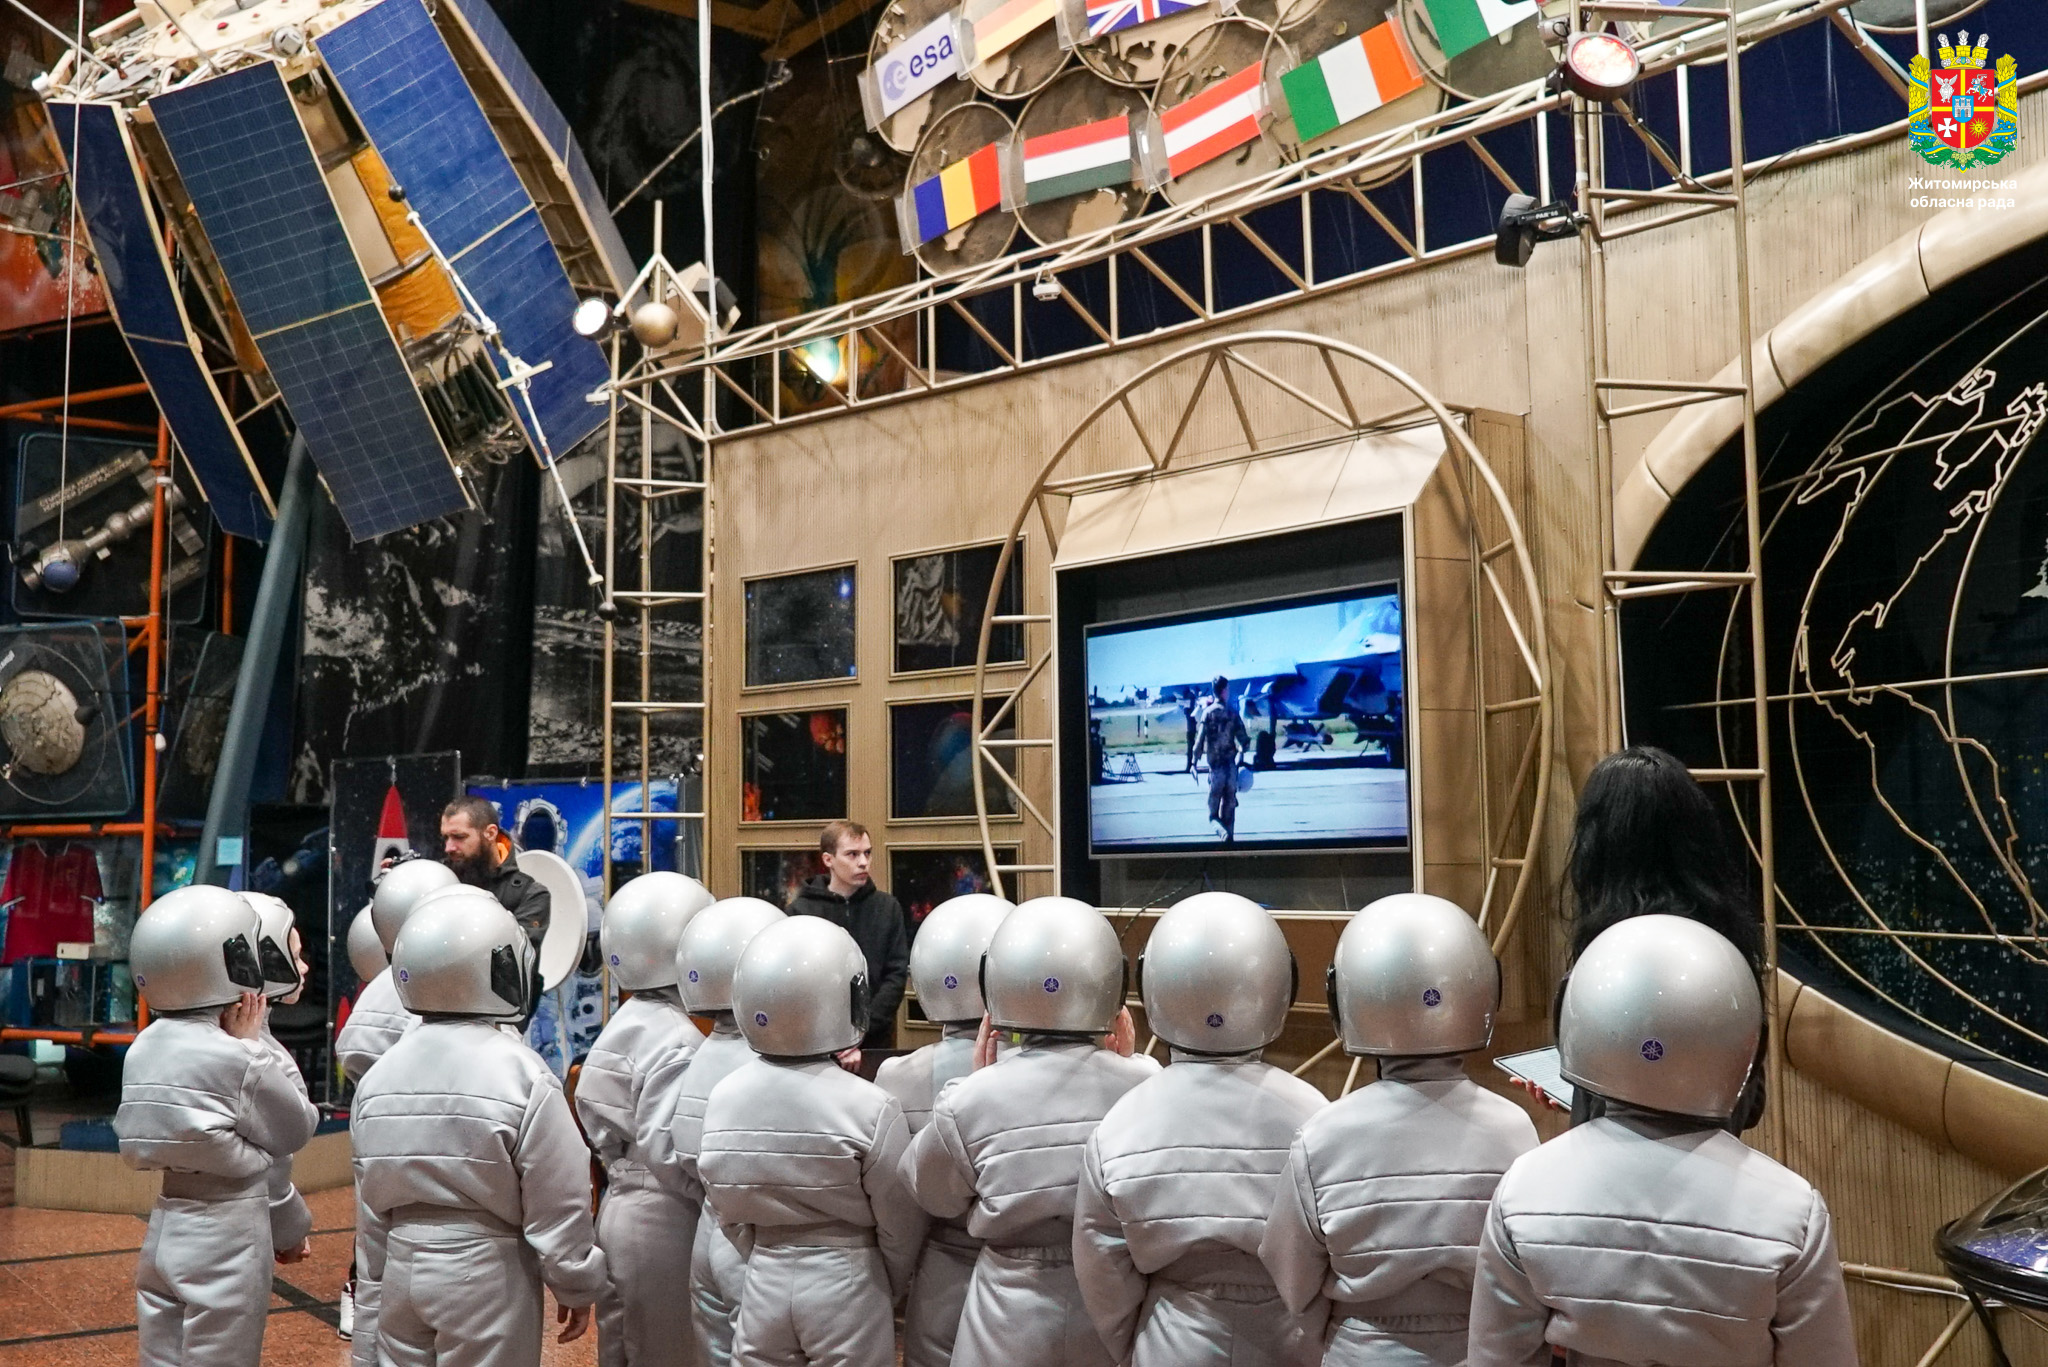 Володимир Ширма долучився до заходів з нагоди Всесвітнього дня авіації і космонавтики